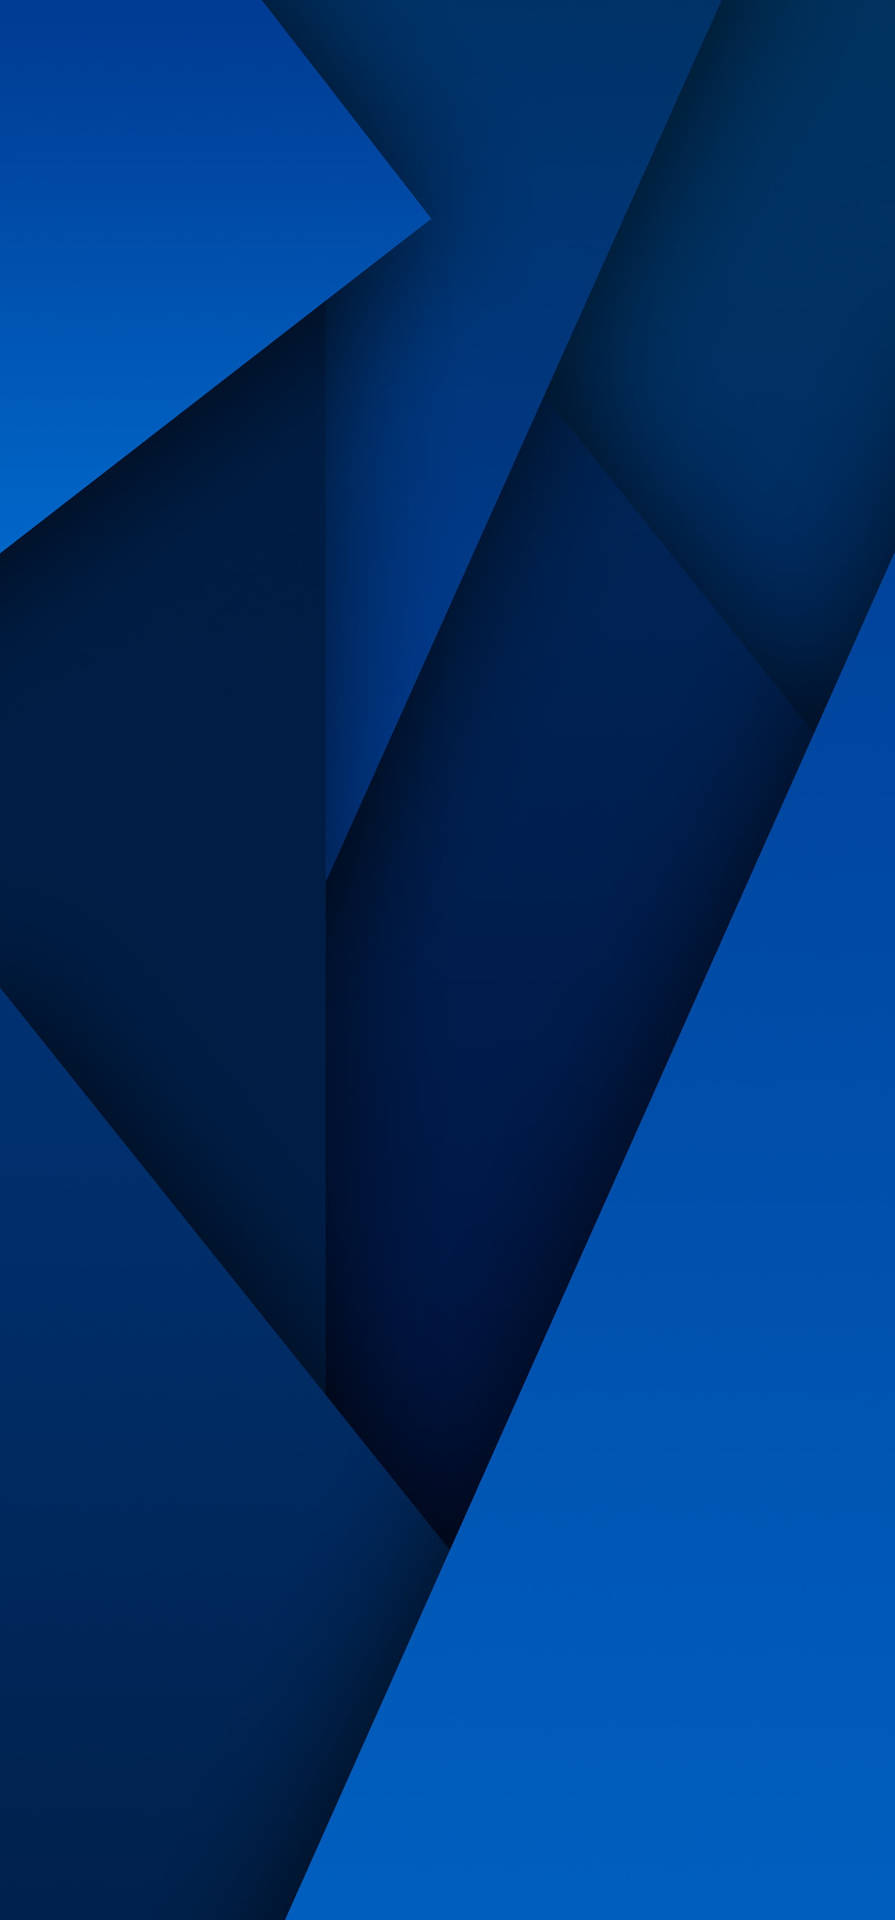 Nếu bạn đang muốn tải hình nền Samsung Galaxy Note 20 Ultra Blue Geometic Patterns, hãy sẵn sàng được đắm mình vào một thế giới tuyệt đẹp của đường nét hình học tinh tế. Với những mảng màu xanh bóng và hình ảnh đáng trông chờ đợi, hình nền này sẽ mang đến cho bạn sự sang trọng và quý phái khi sử dụng điện thoại của mình.